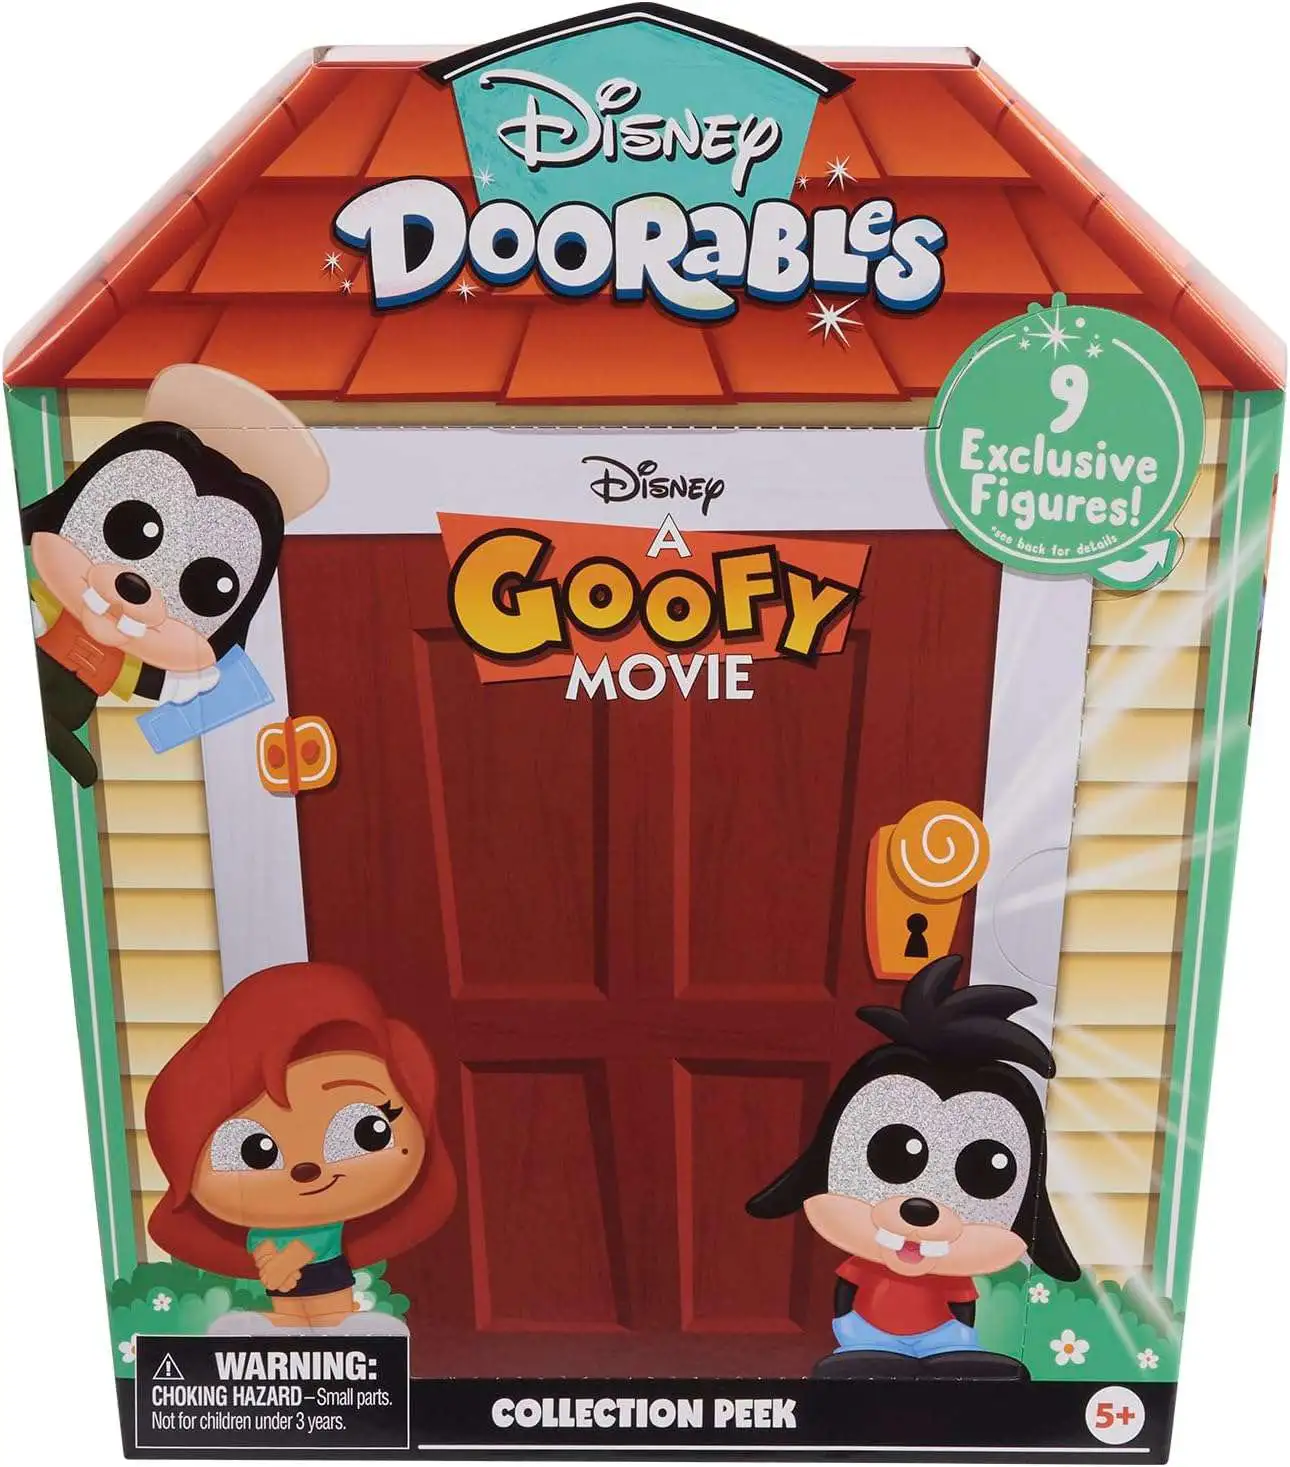 Disney Doorables Series 7 Collectable Figures 